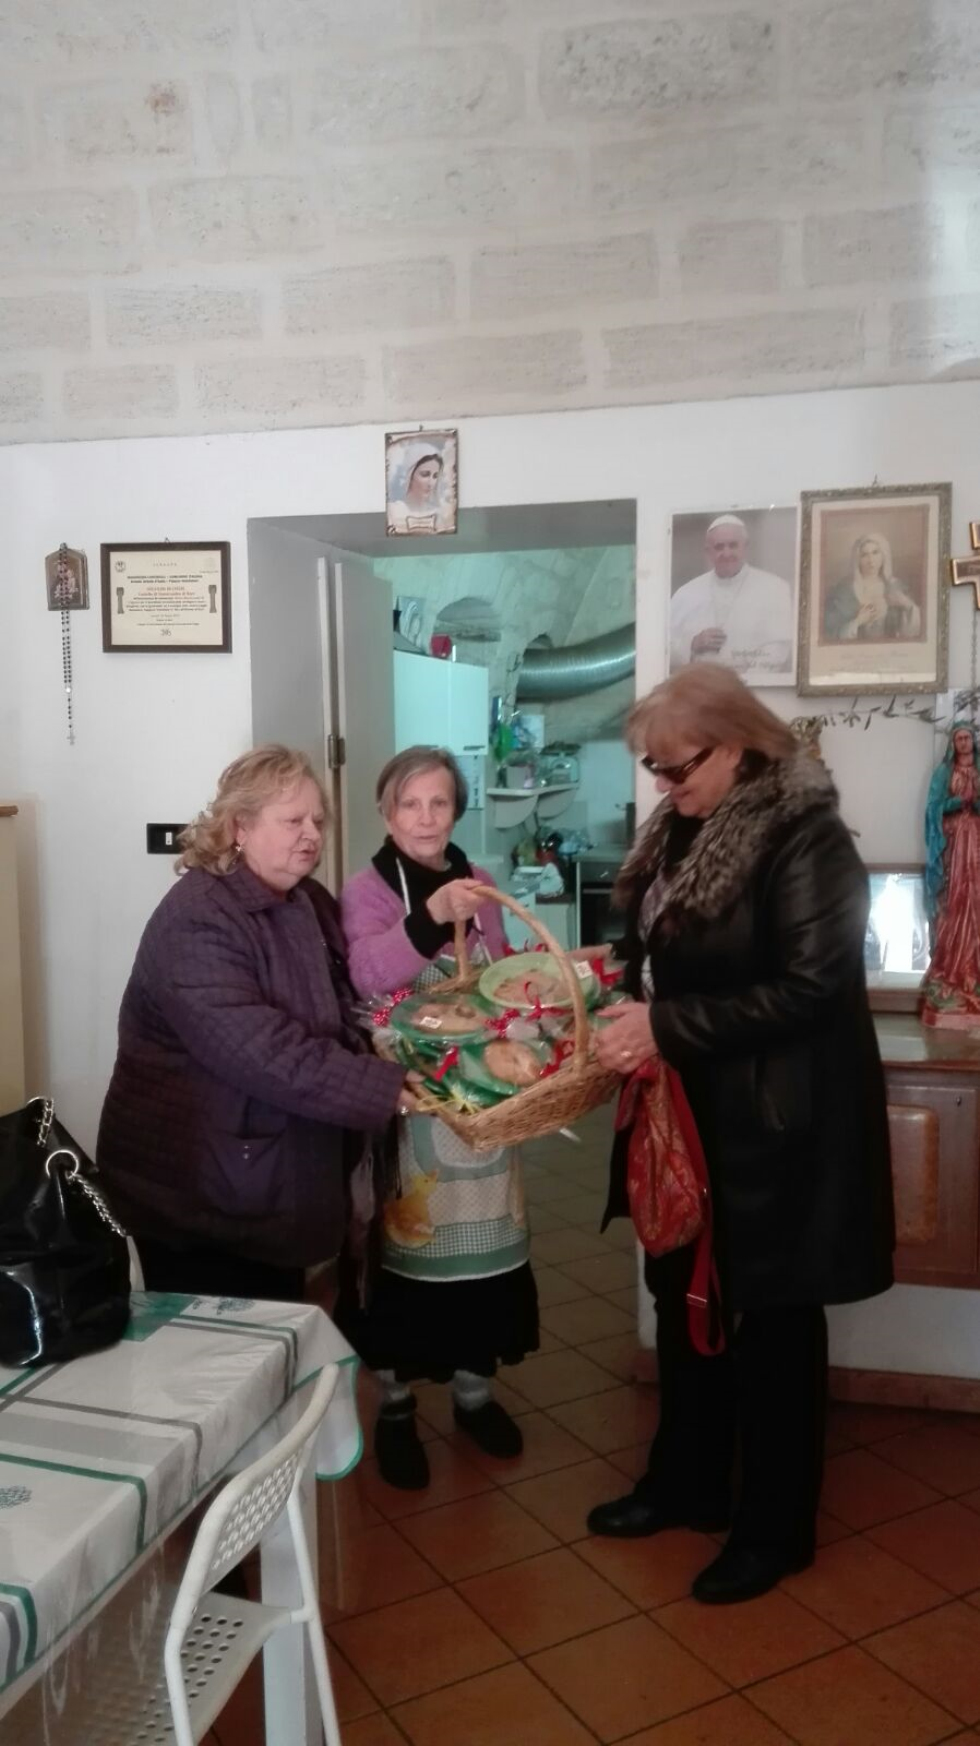 Le volontarie di Anteas Triggiano presentano le scarcelle, dolce pugliese della tradizione pasquale, da tramandare e condividere